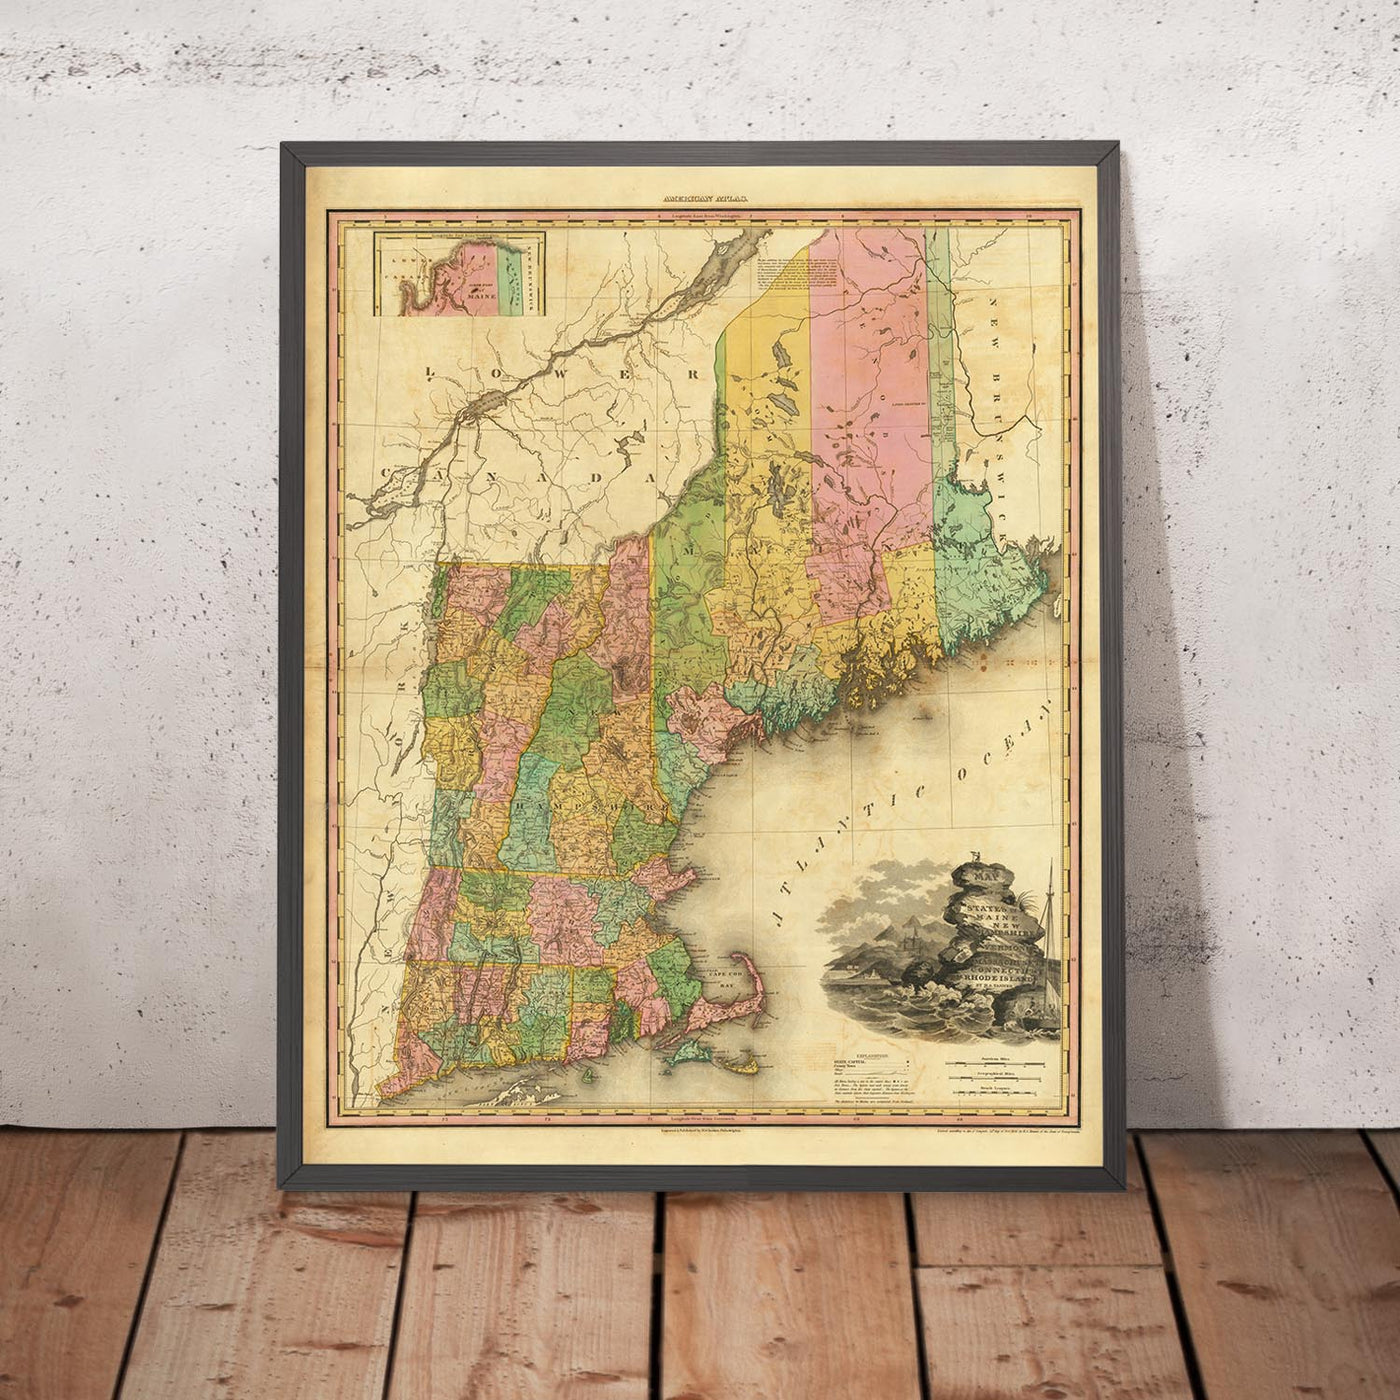 Alte Karte von Neuengland von H. S. Tanner, 1820 - Boston, Providence, Hartford, Portland, Worcester